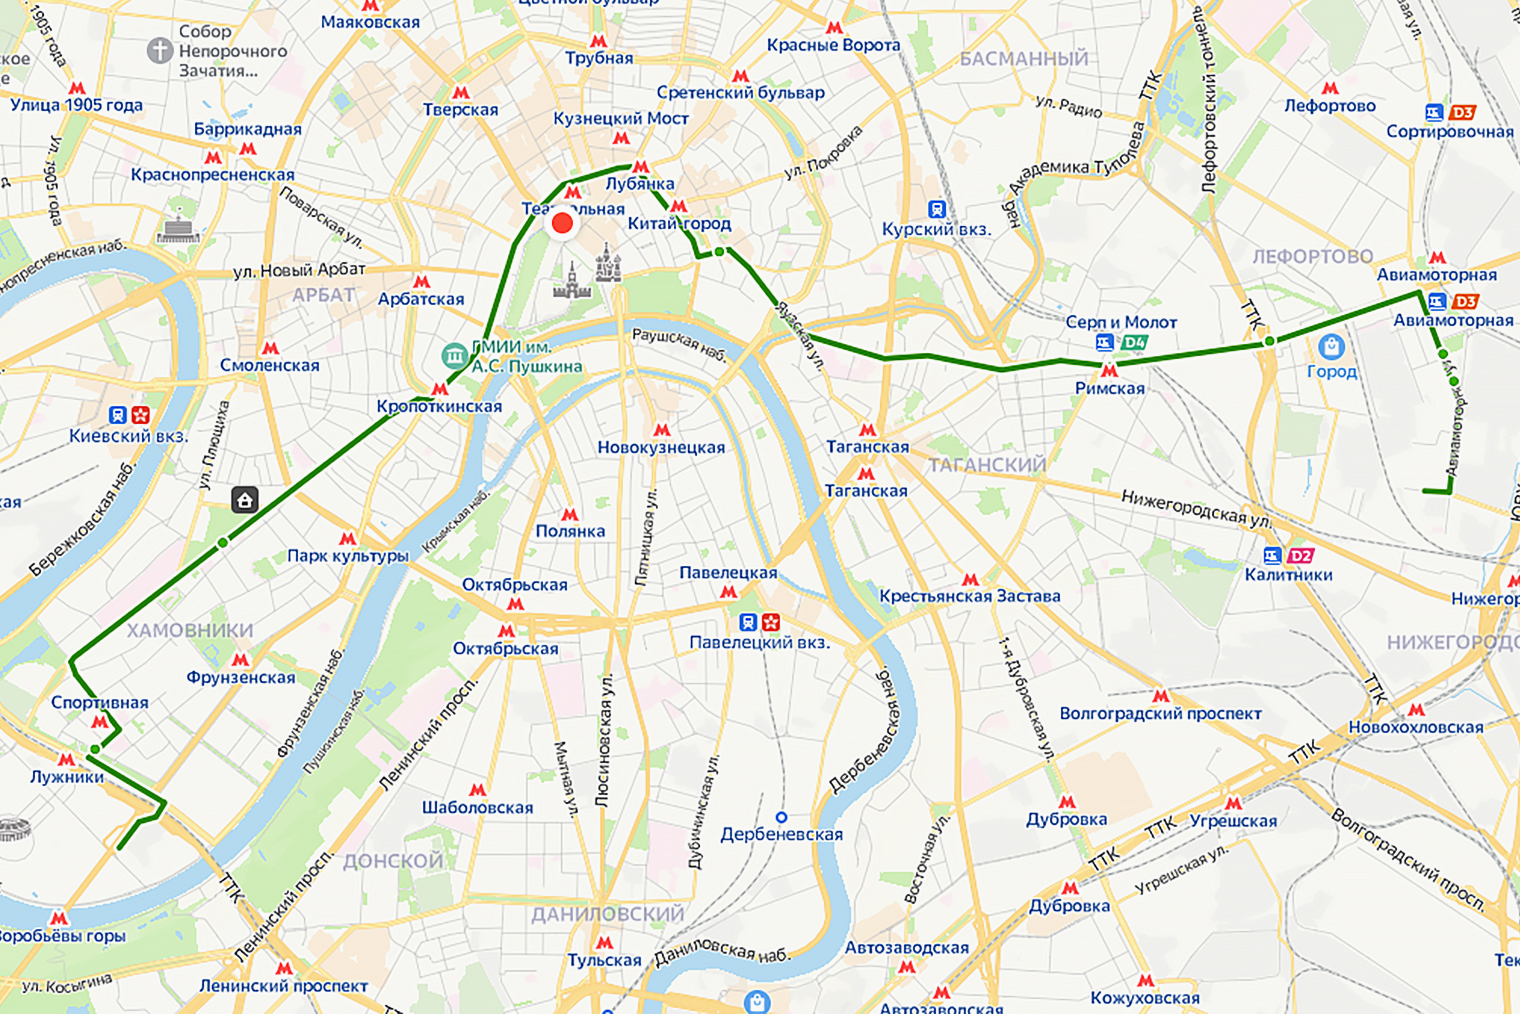 Схема движения автобуса по маршруту М6. Источник: yandex.ru/maps